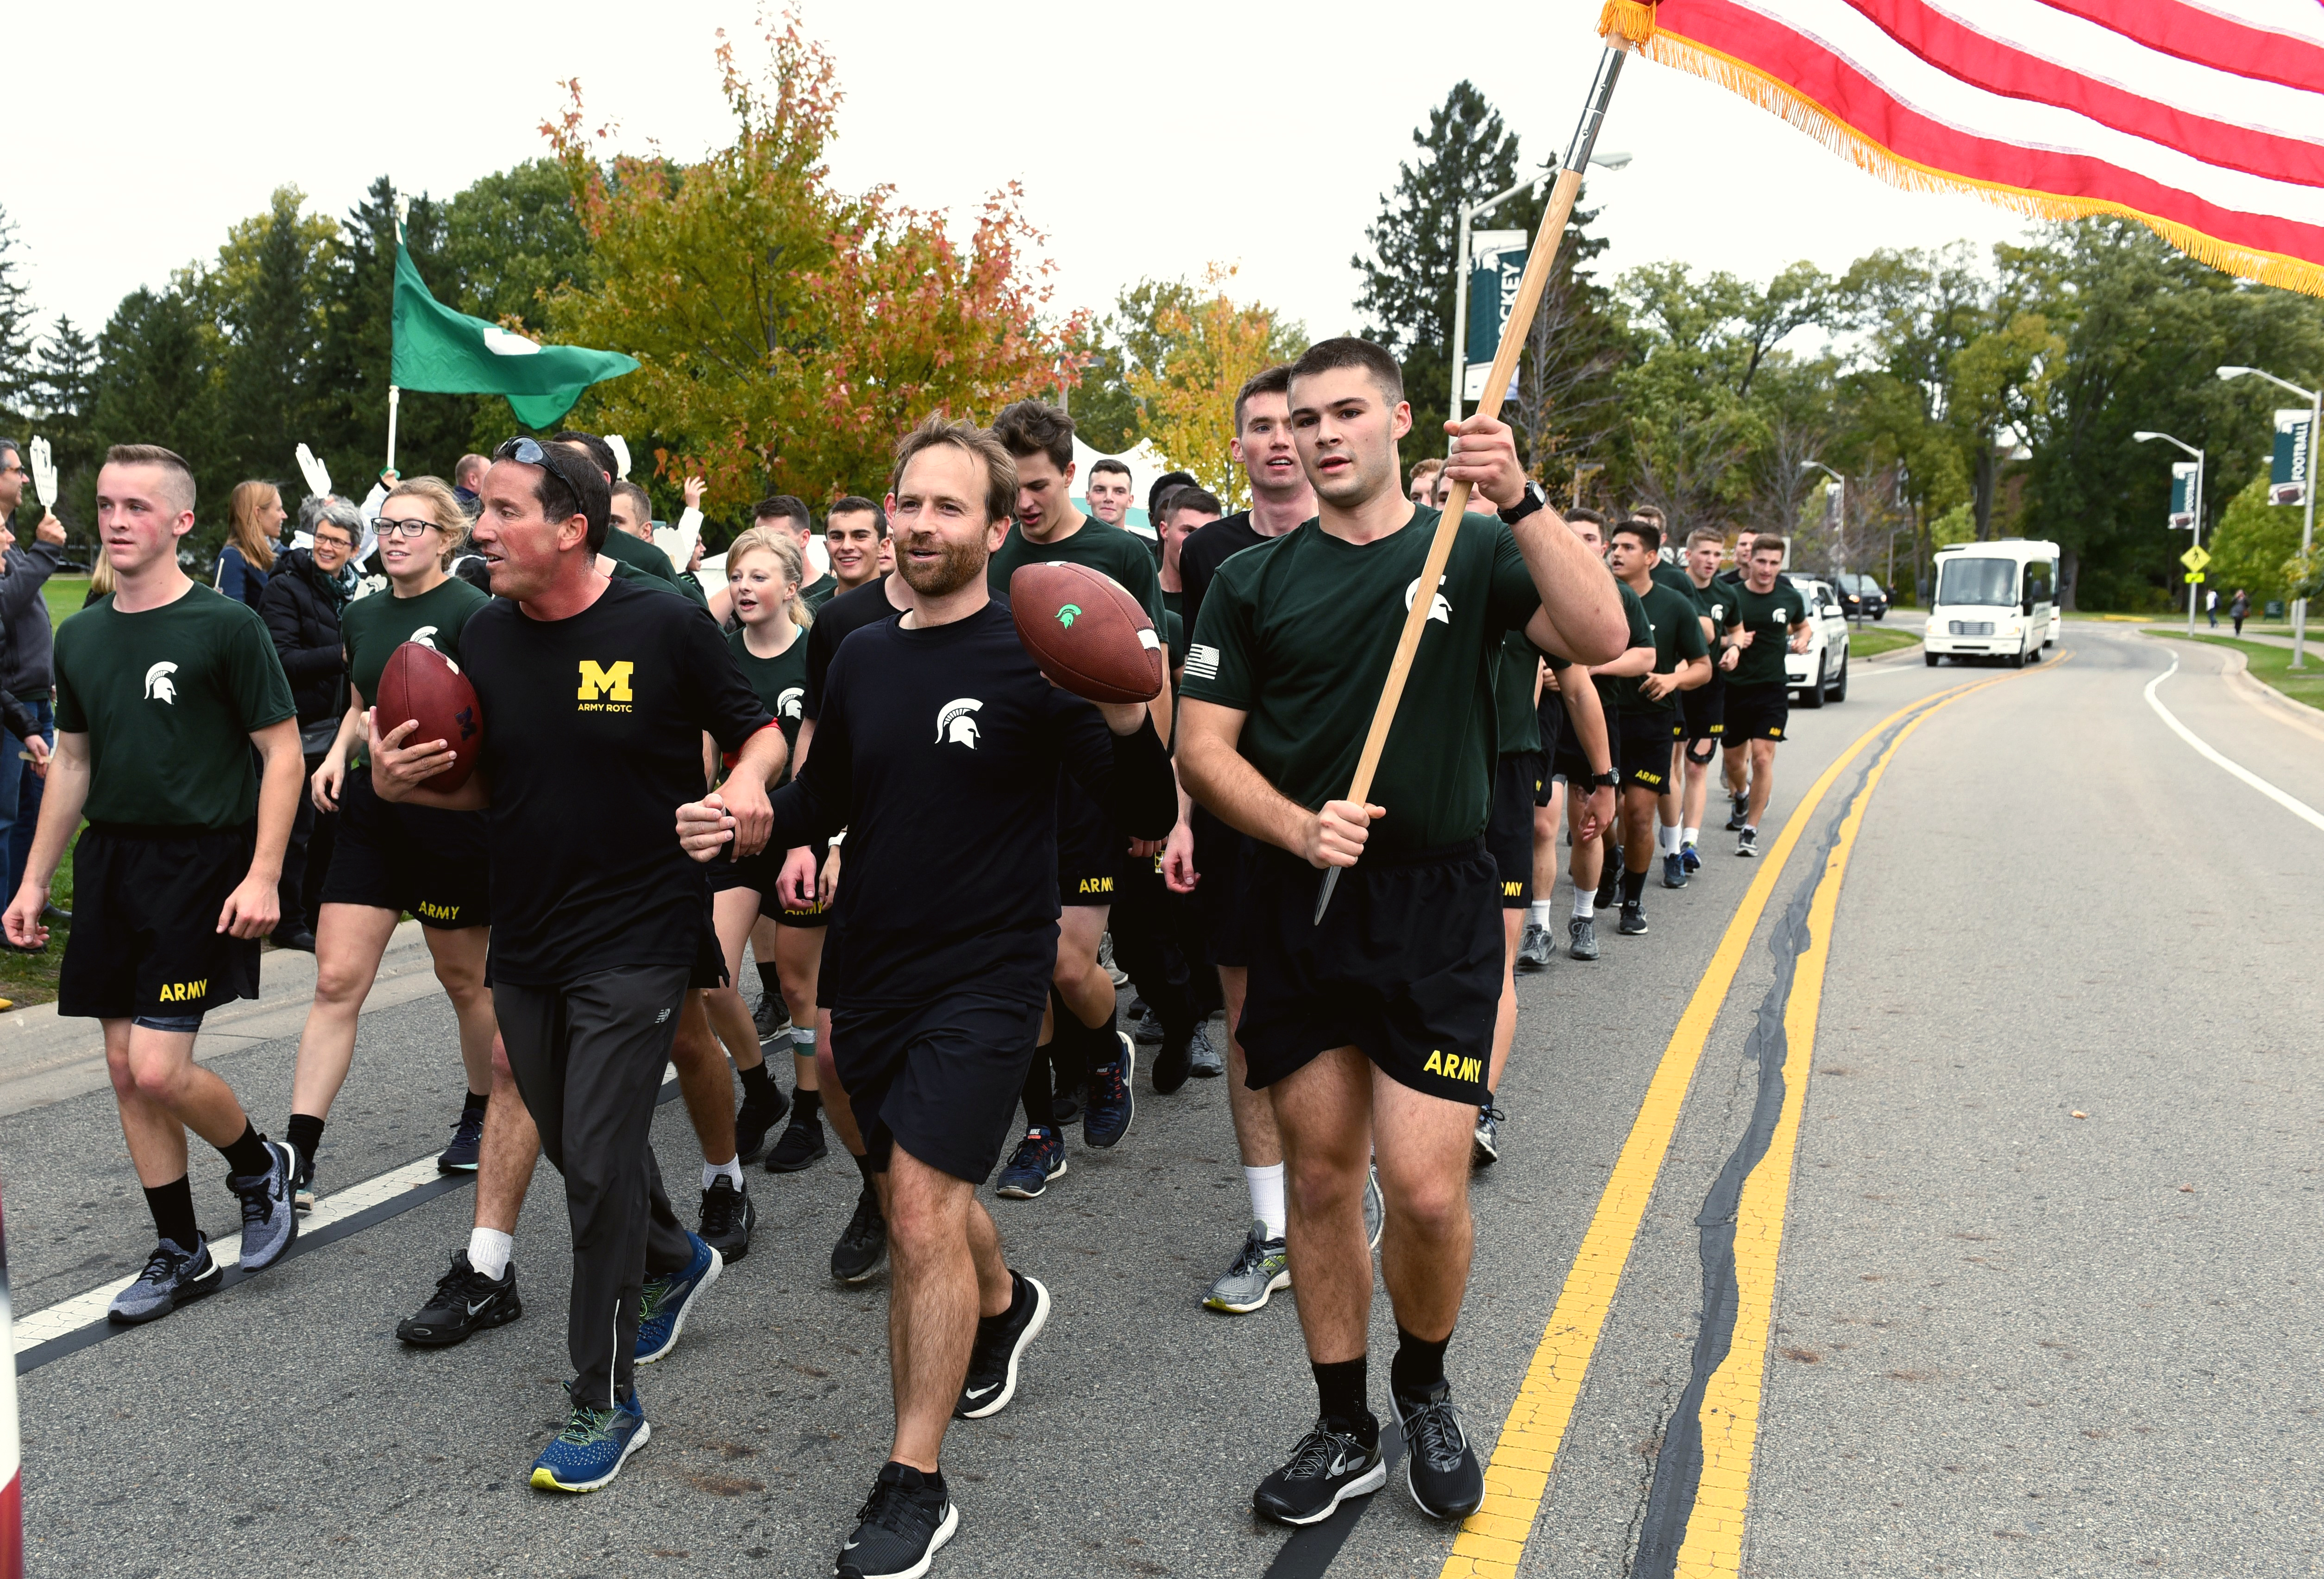 University of Michigan and Michigan State University ROTC members walking Alex's Great State Race